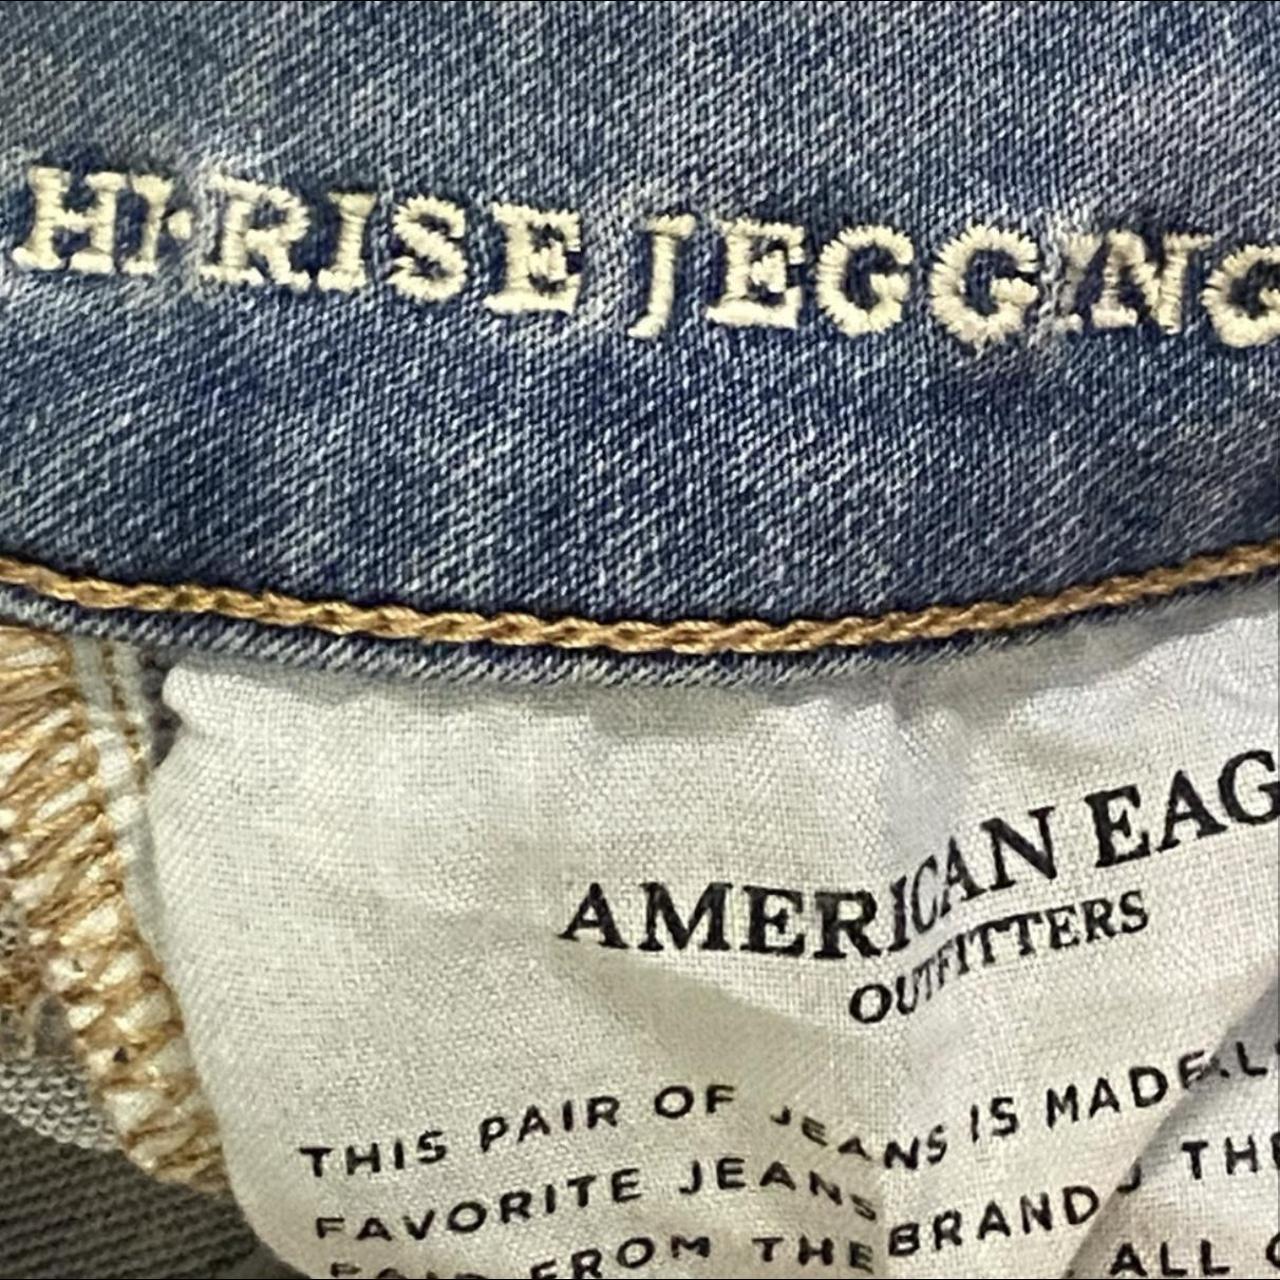 American eagle Jeggings Light washed Great - Depop